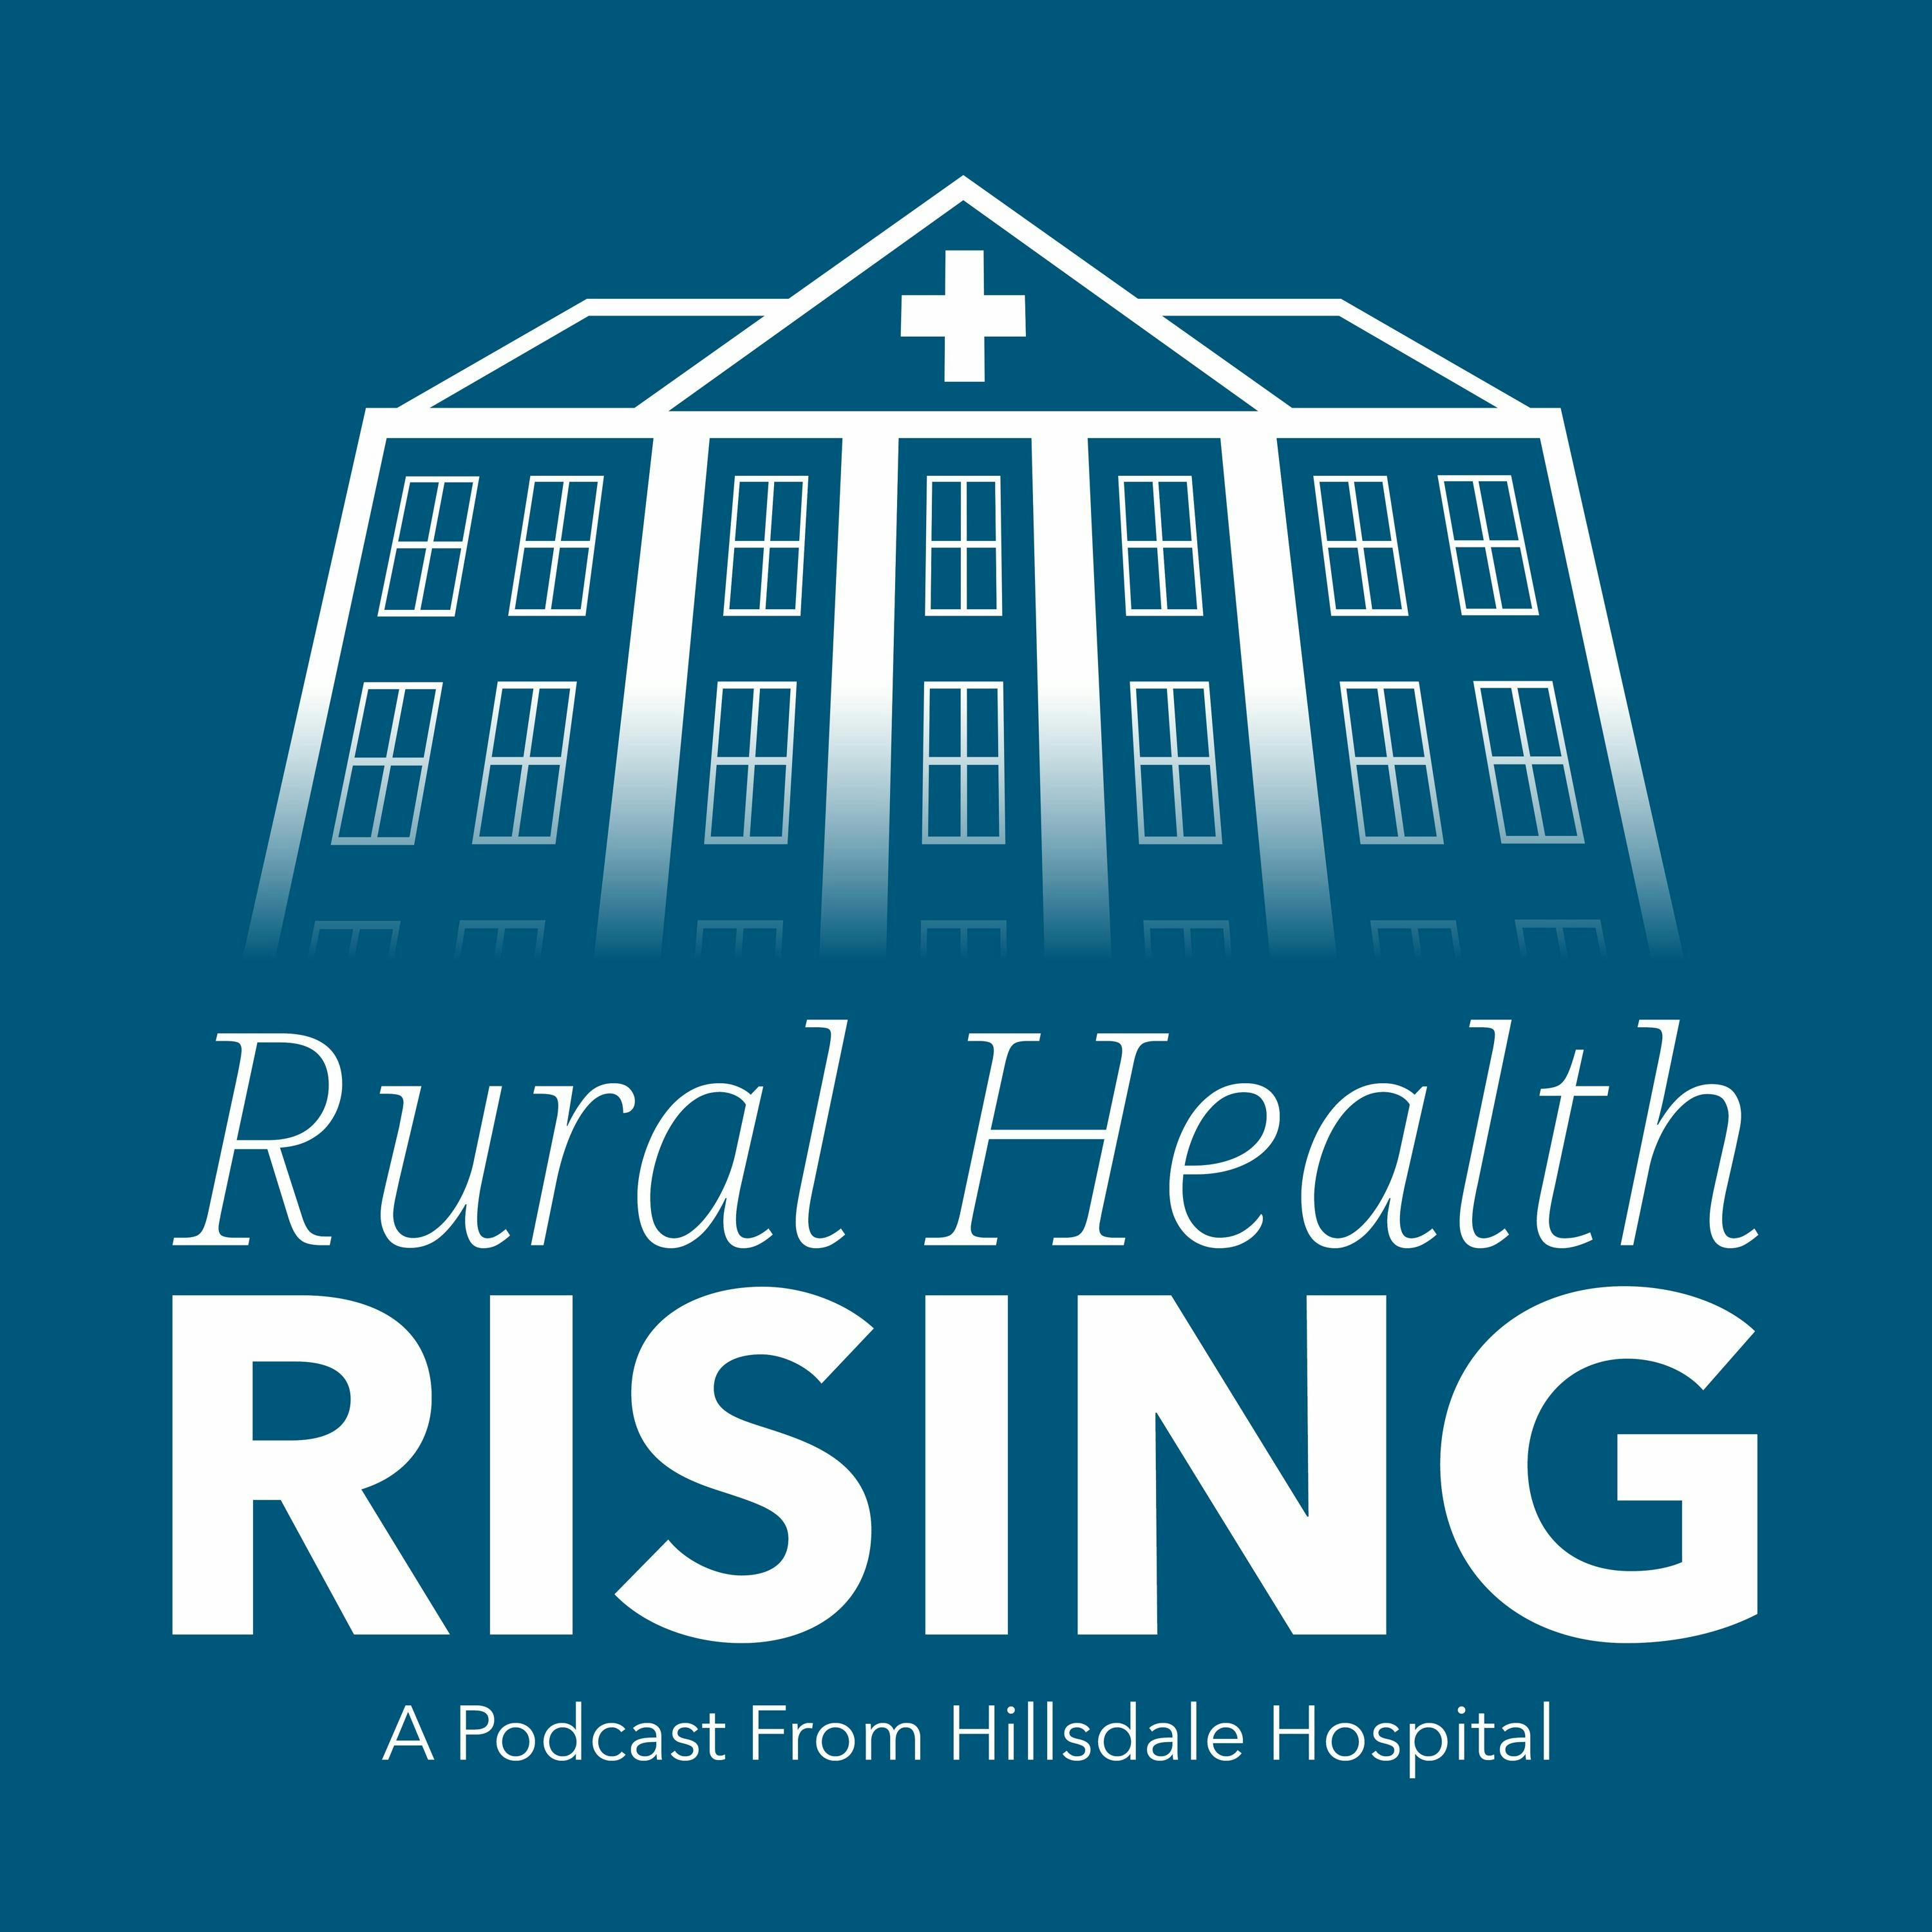 Episode 28: Part 2: Rural Hospital-Based Medicine